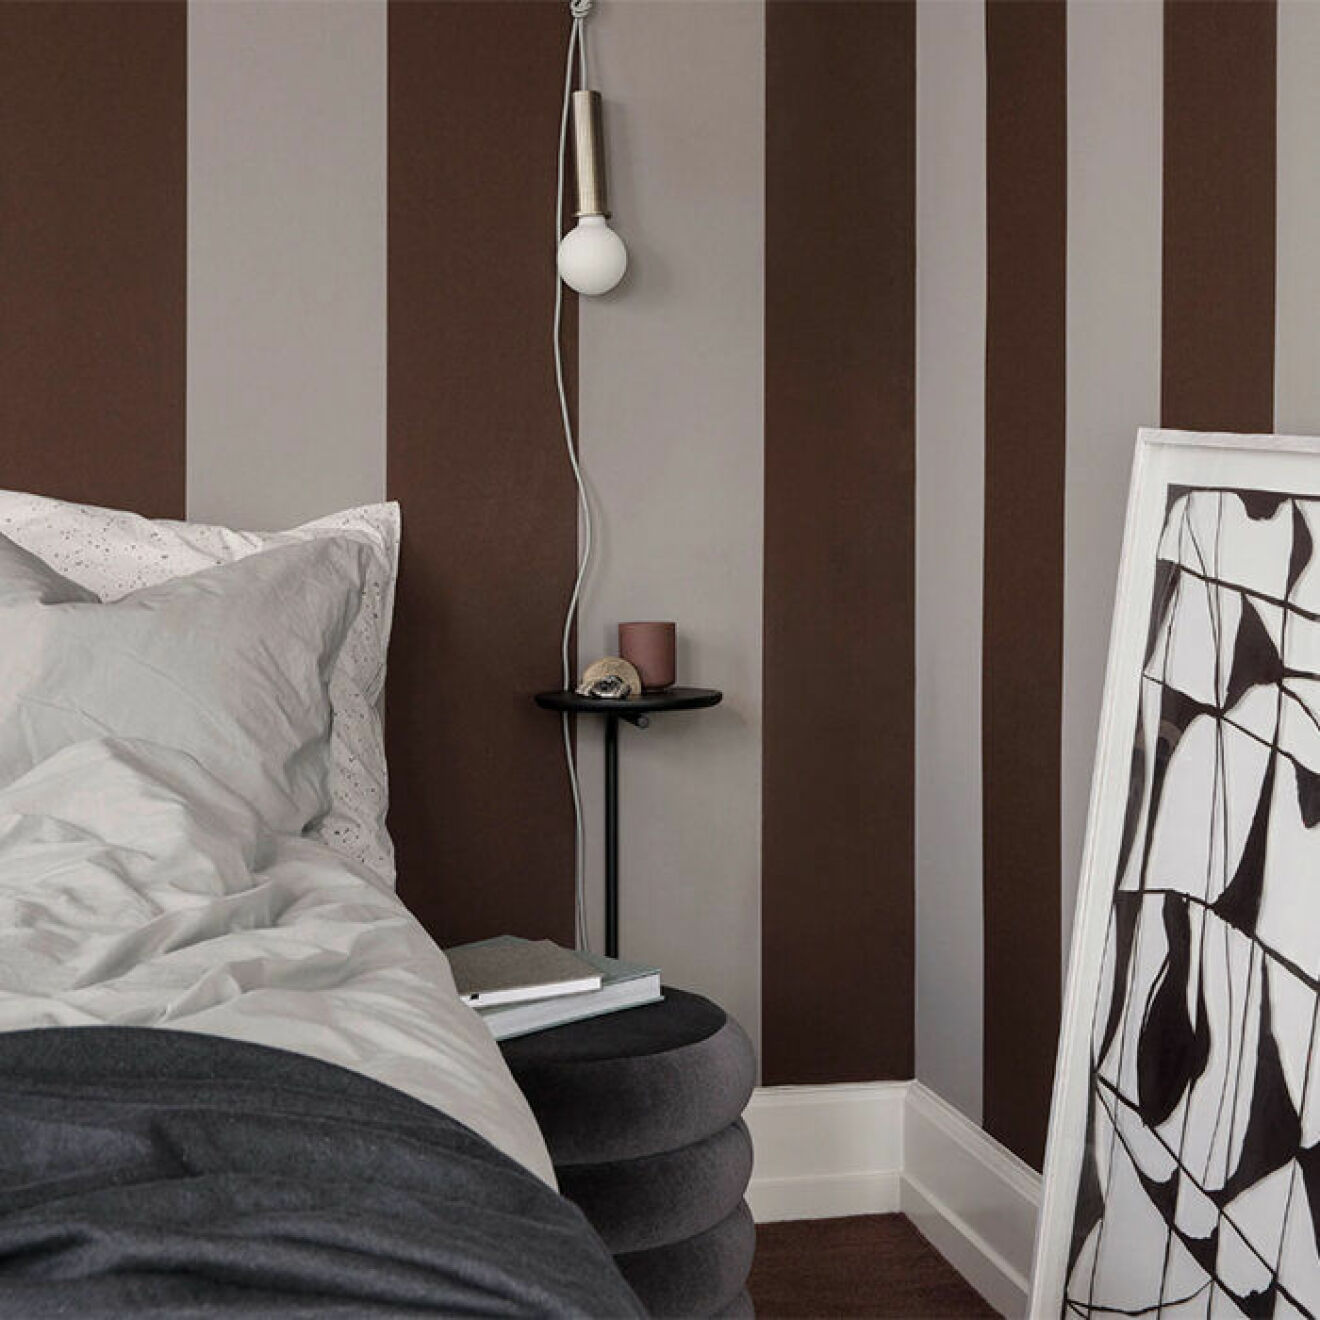 Pujo sängbord från Ferm Living är en minimalistisk detalj i sovrummet